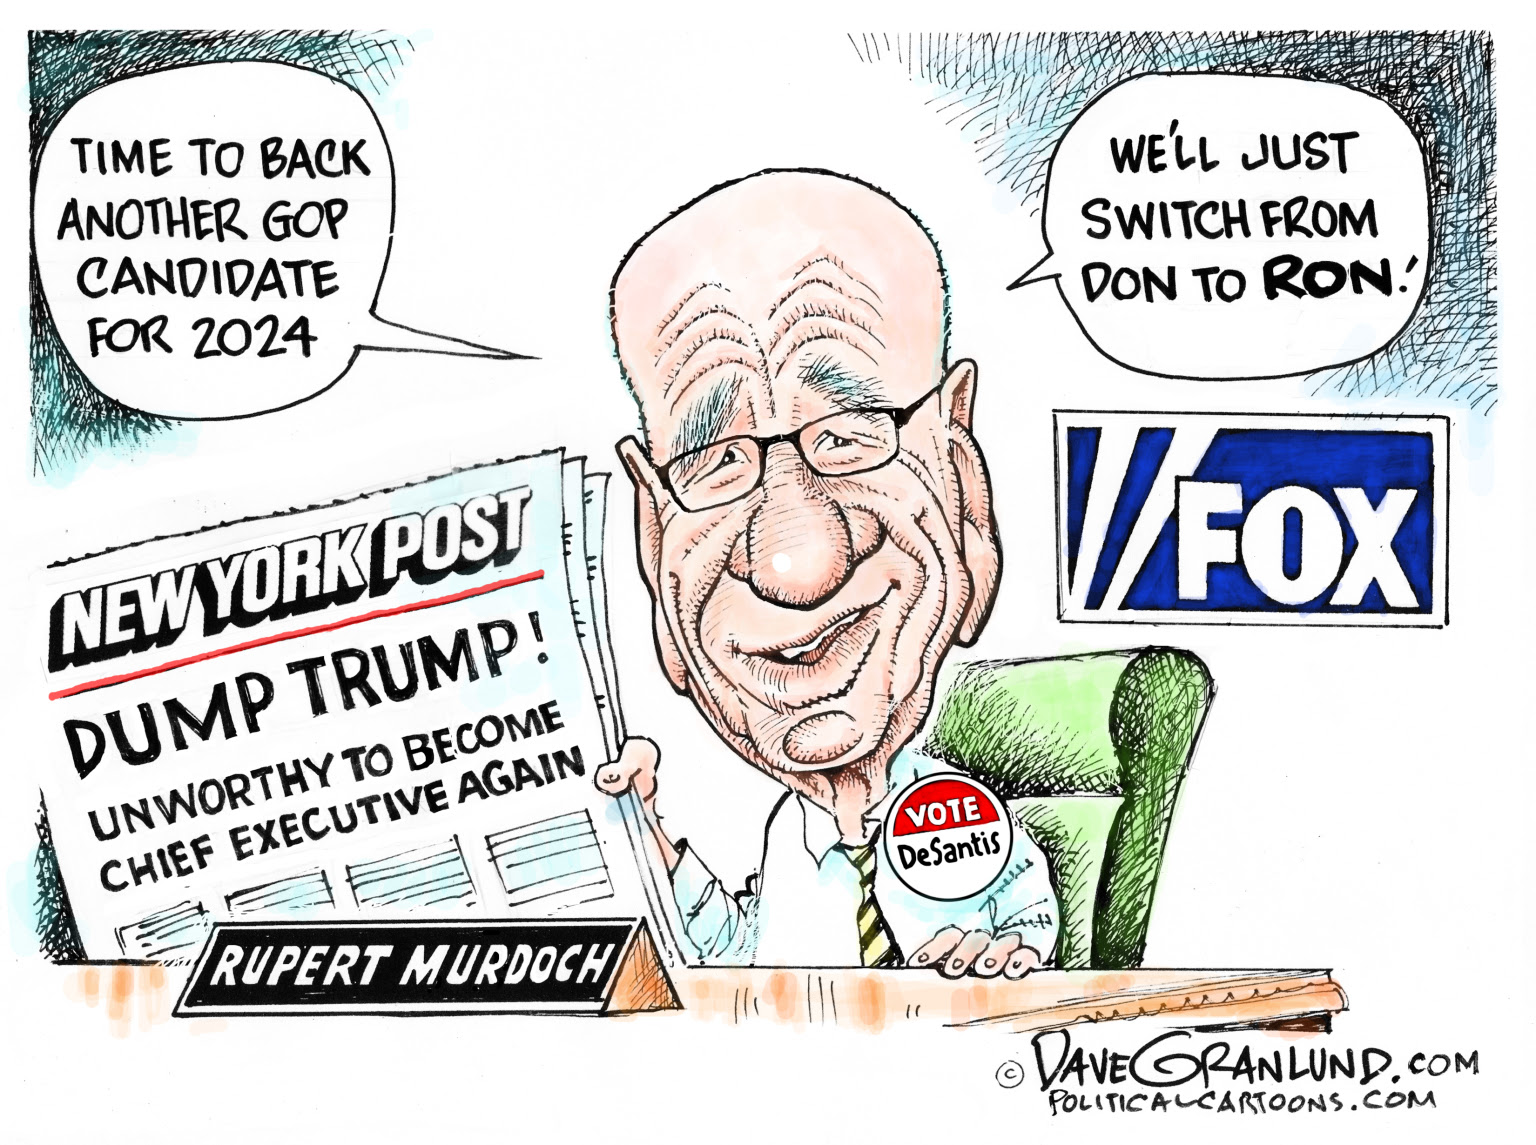 Murdoch media empire spreads disinformation for profit